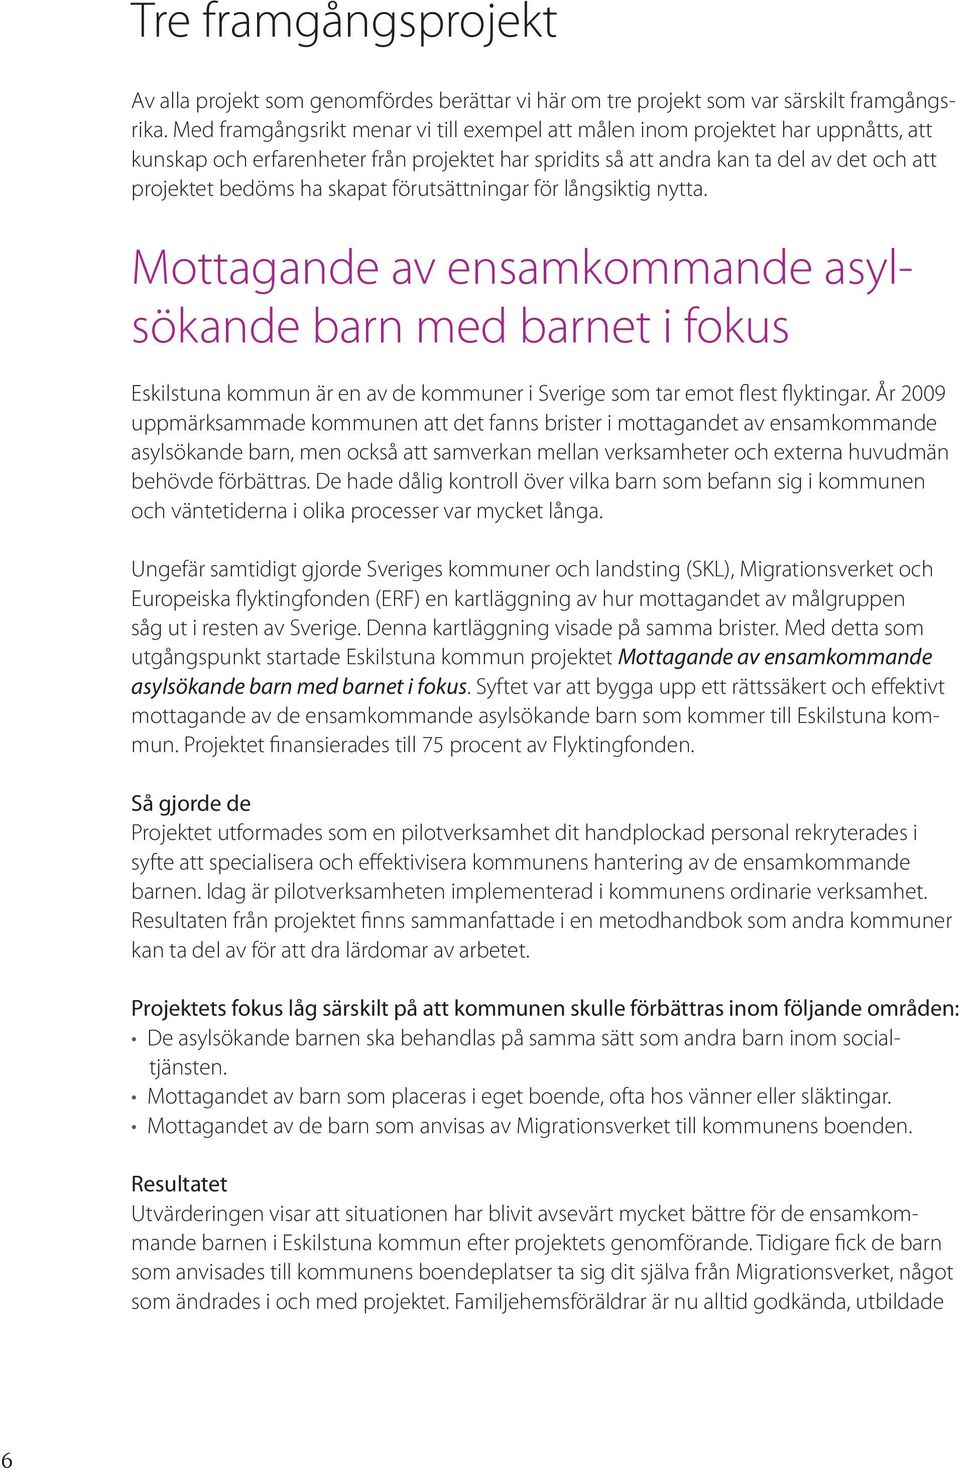 skapat förutsättningar för långsiktig nytta. Mottagande av ensamkommande asylsökande barn med barnet i fokus Eskilstuna kommun är en av de kommuner i Sverige som tar emot flest flyktingar.